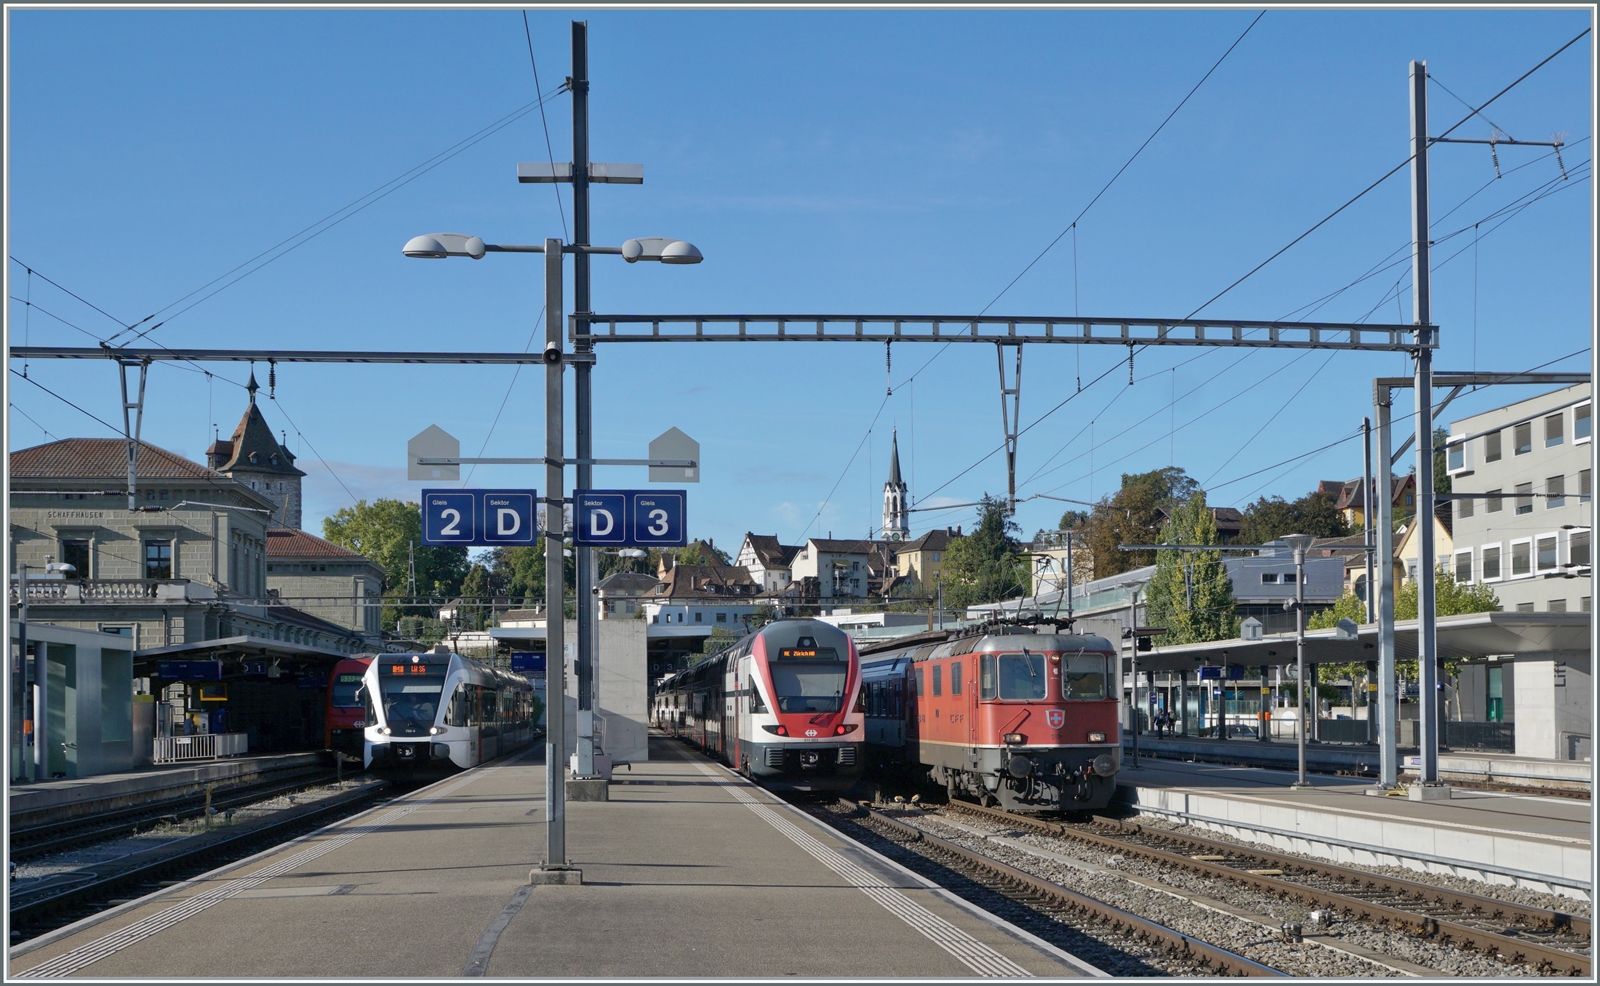 Die SBB Re 4/4 II 11130 ist von Zürich HB kommend mit ihrem IC 4 nach Stuttgart in Schaffhausen angekommen und wird in Kürze nach Singen weiterfahren. 
Im Bild zu sehen sind zusätzlich ein SBB RABe 511 und ein Thurbo GTW RABe 526. 

19. Sept. 2022
